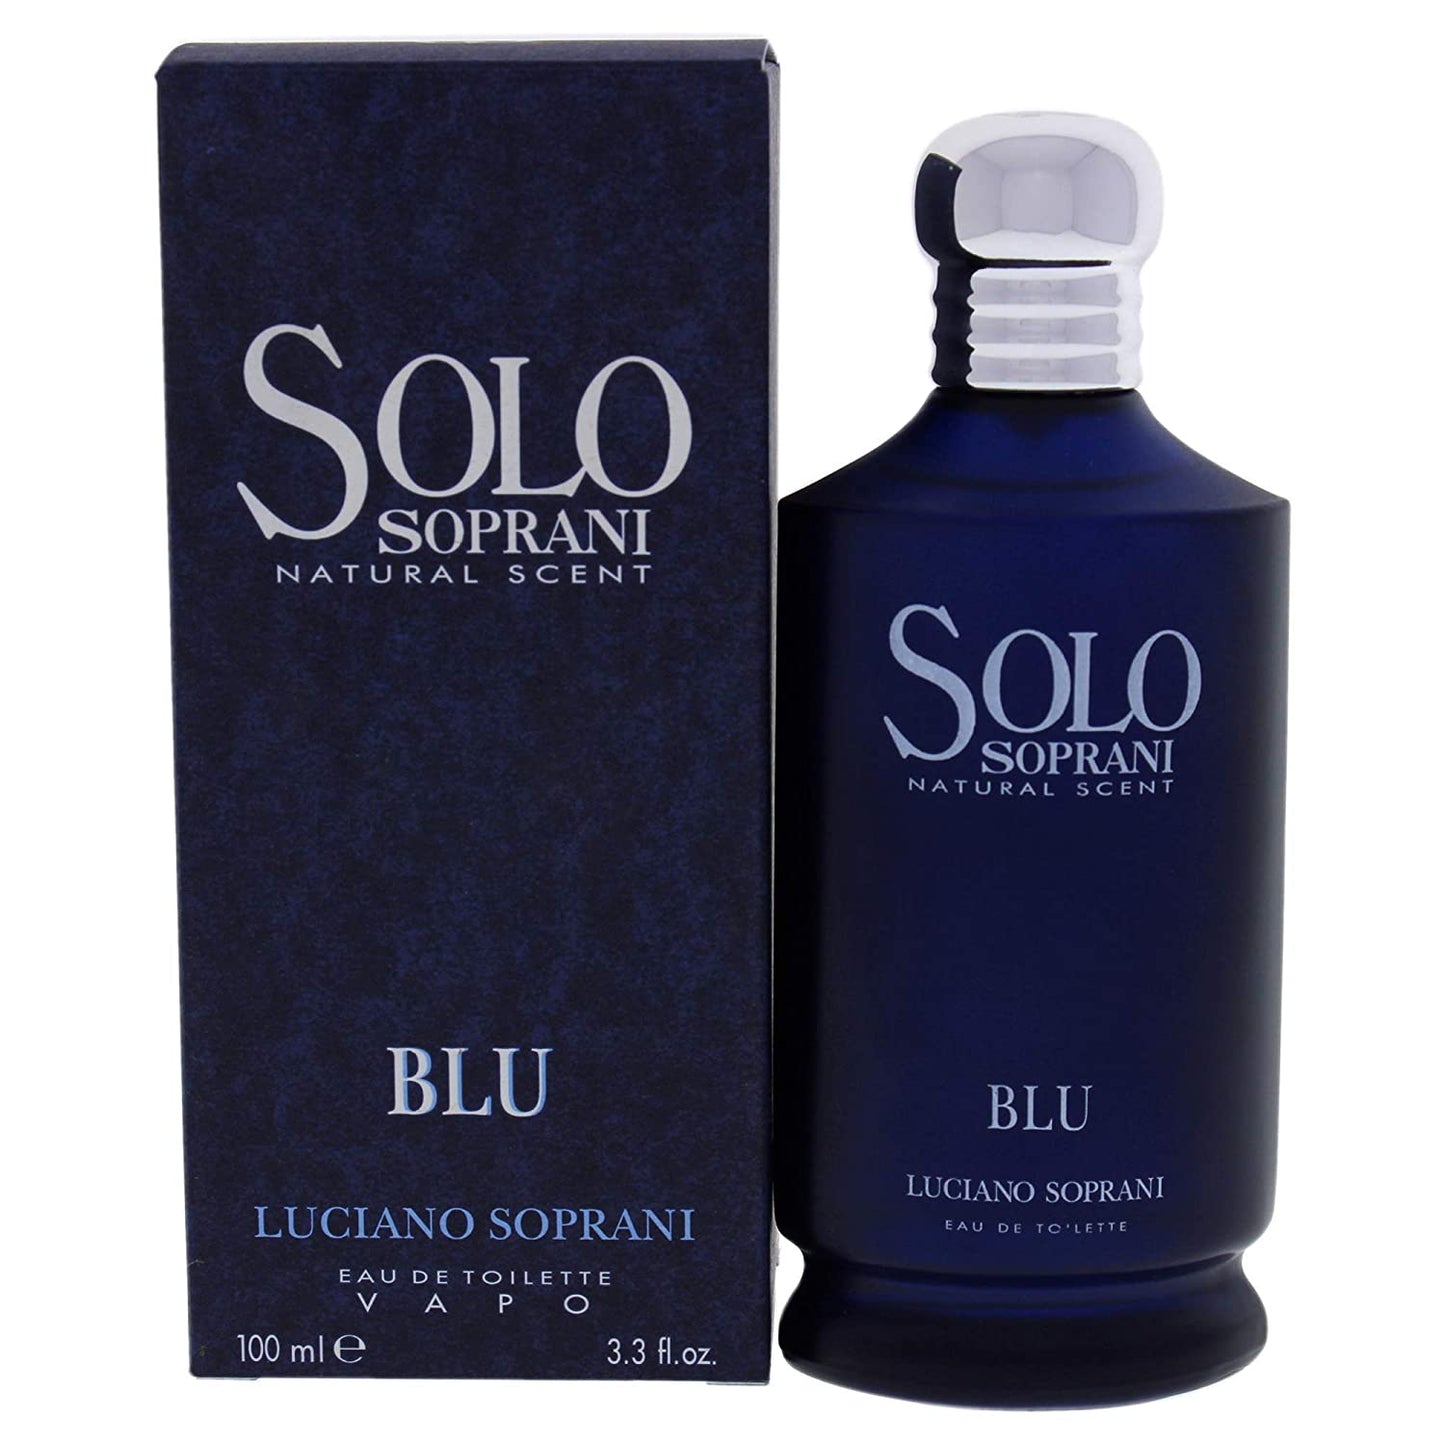 Solo Soprani Blu by Luciano Soprani (3.3 oz)